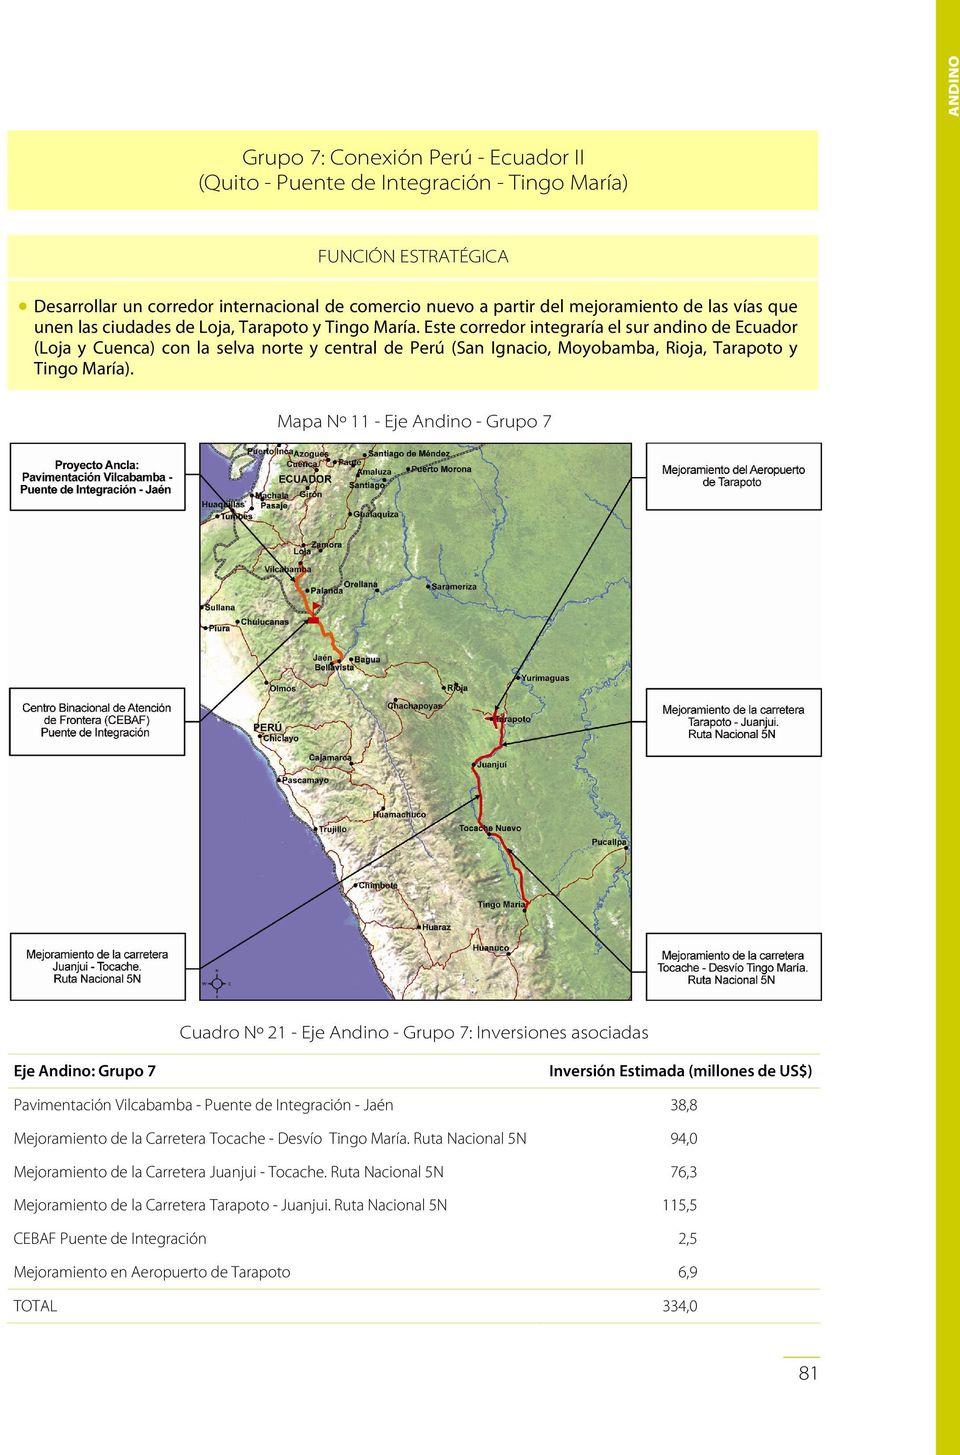 Este corredor integraría el sur andino de Ecuador (Loja y Cuenca) con la selva norte y central de Perú (San Ignacio, Moyobamba, Rioja, Tarapoto y Tingo María).